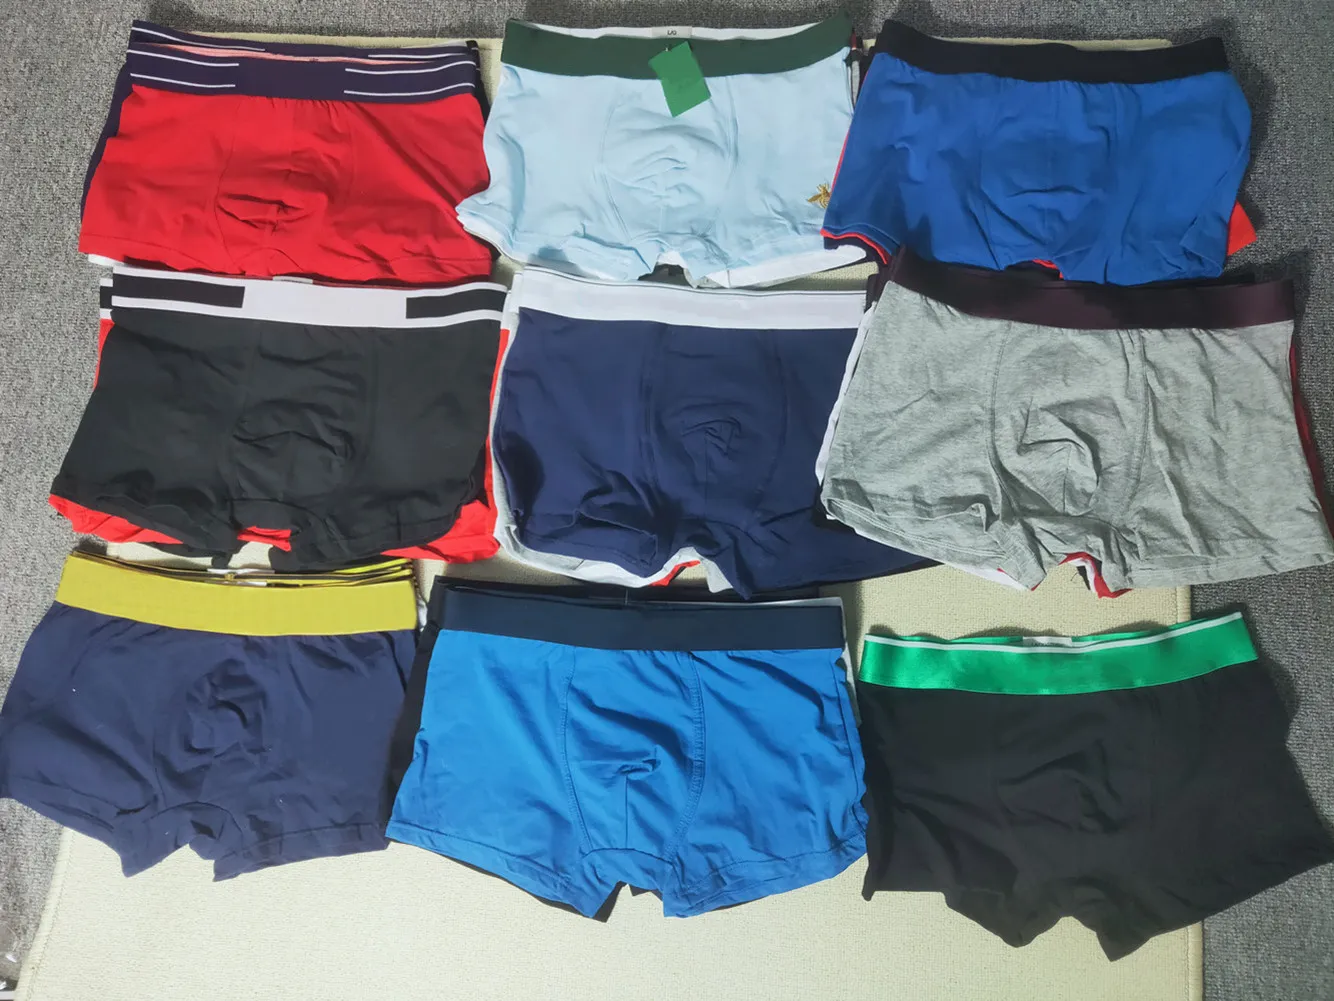 Mens Boxers Slips Sexy Onderbroek Trek ondergoed Gemengde Kleuren Kwaliteit Meerdere keuzes Aziatische maat kan specificeren van kleur shorts slipje mode verzonden willekeurige bokser